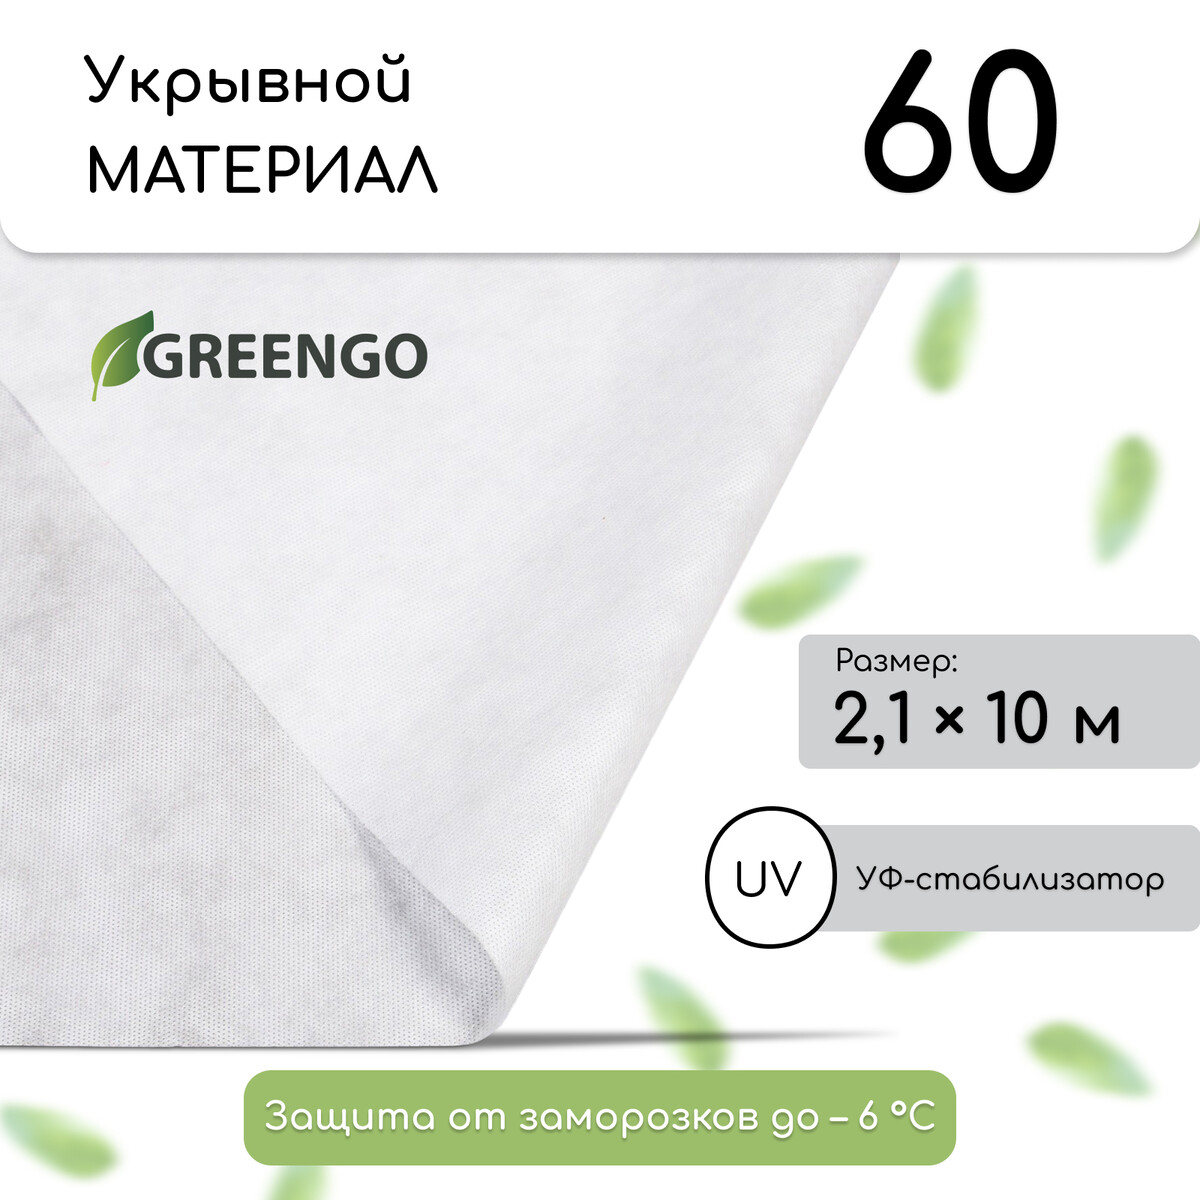 Материал укрывной, 10 × 2,1 м, плотность 60 г/м², спанбонд с уф-стабилизатором, белый, greengo, эконом 20%